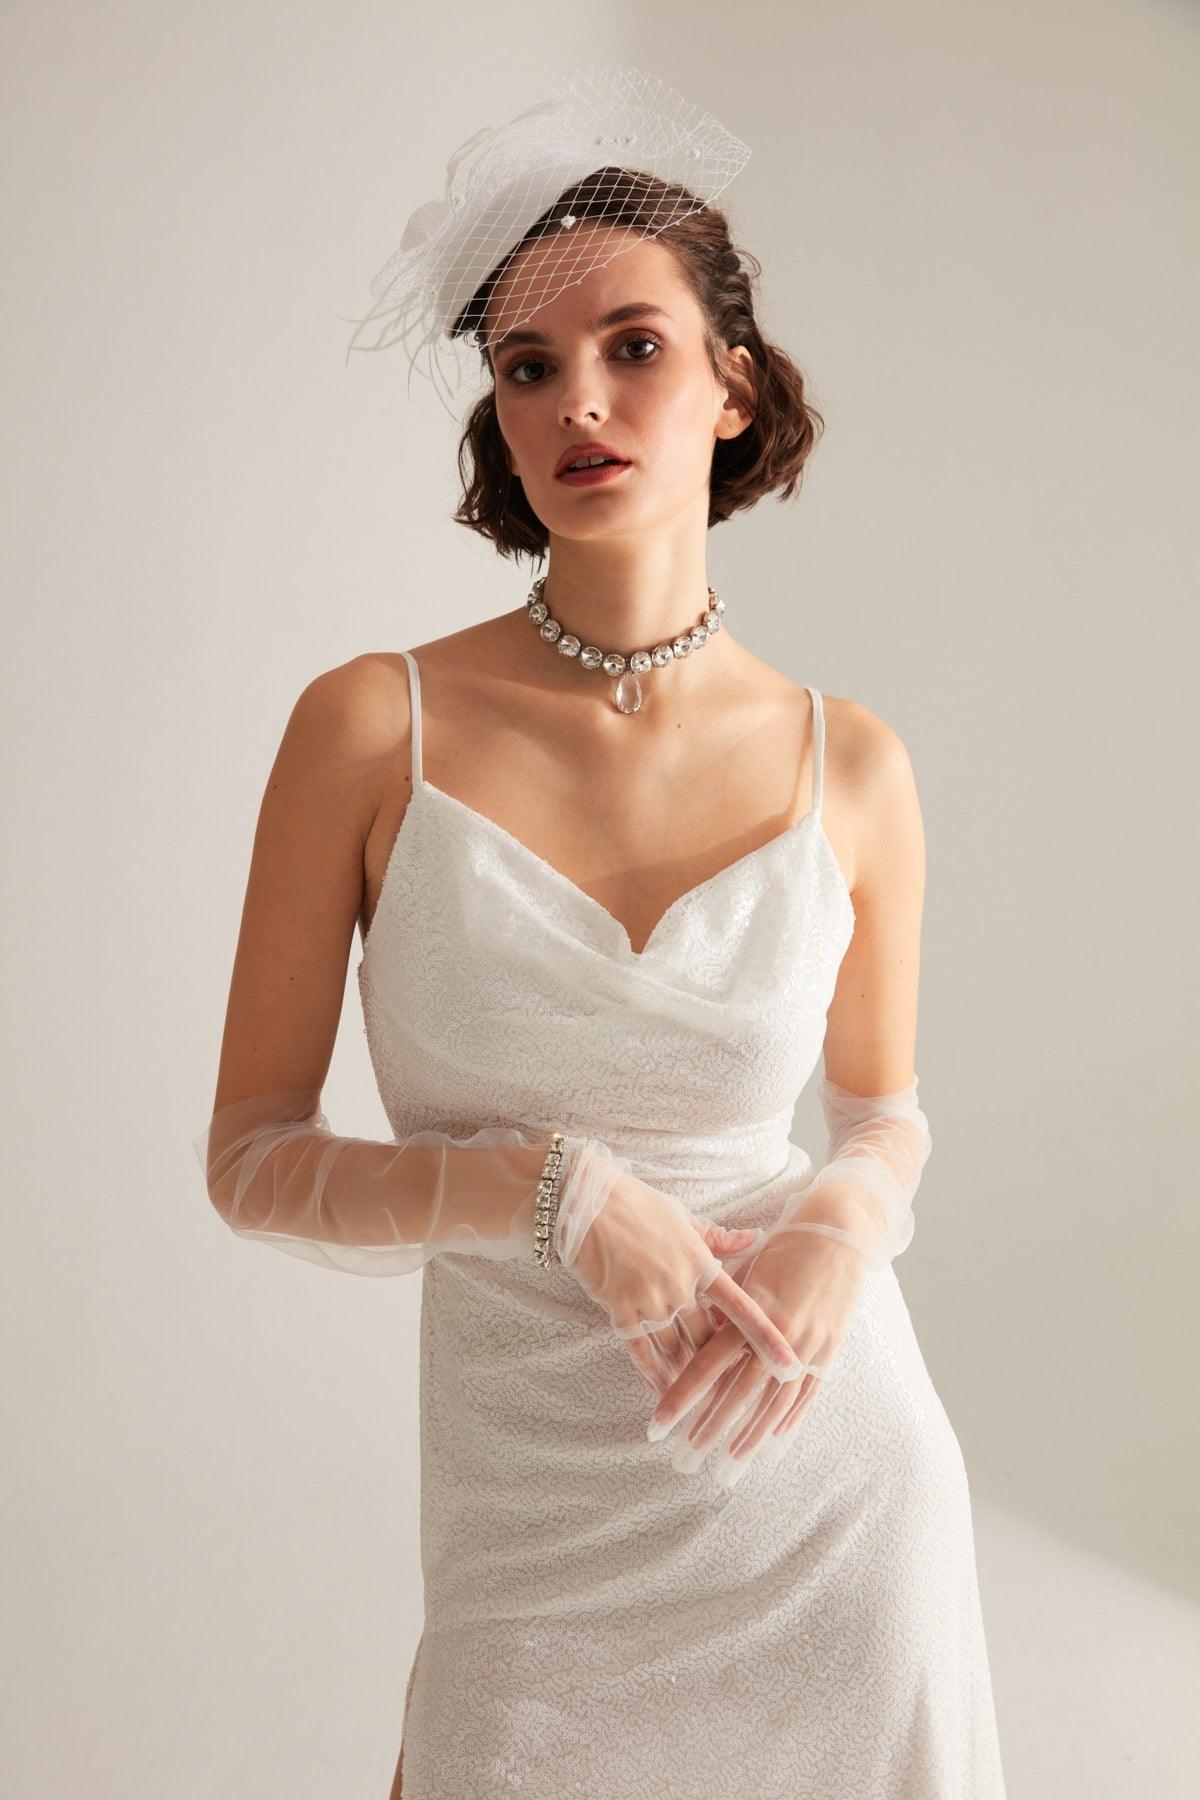 Strap Degajee Collar Slit Sequin White Evening Dress - Swordslife